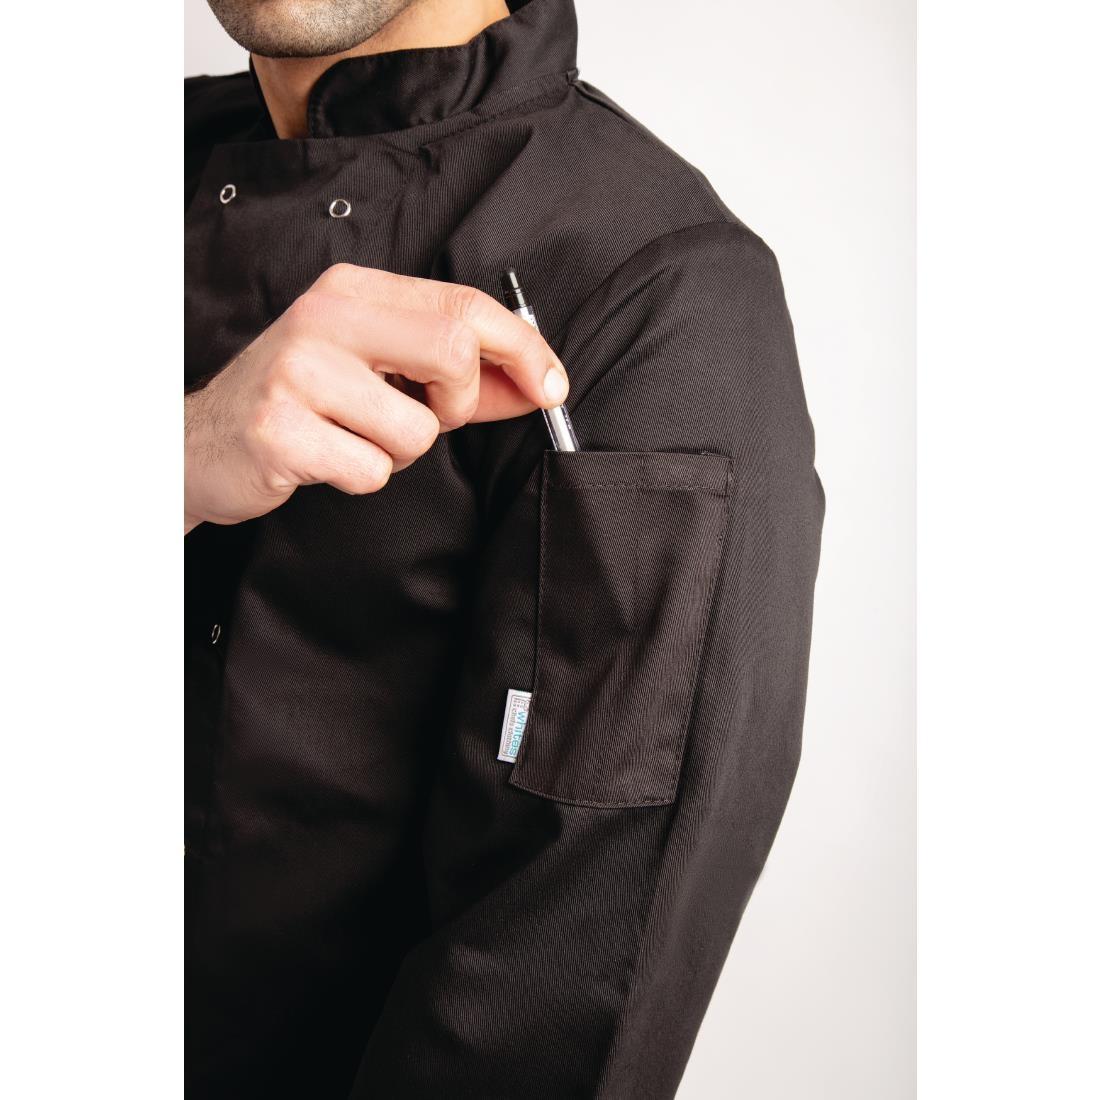 Whites Vegas Unisex Chefs Jacket Long Sleeve Black M - A438-M  - 9